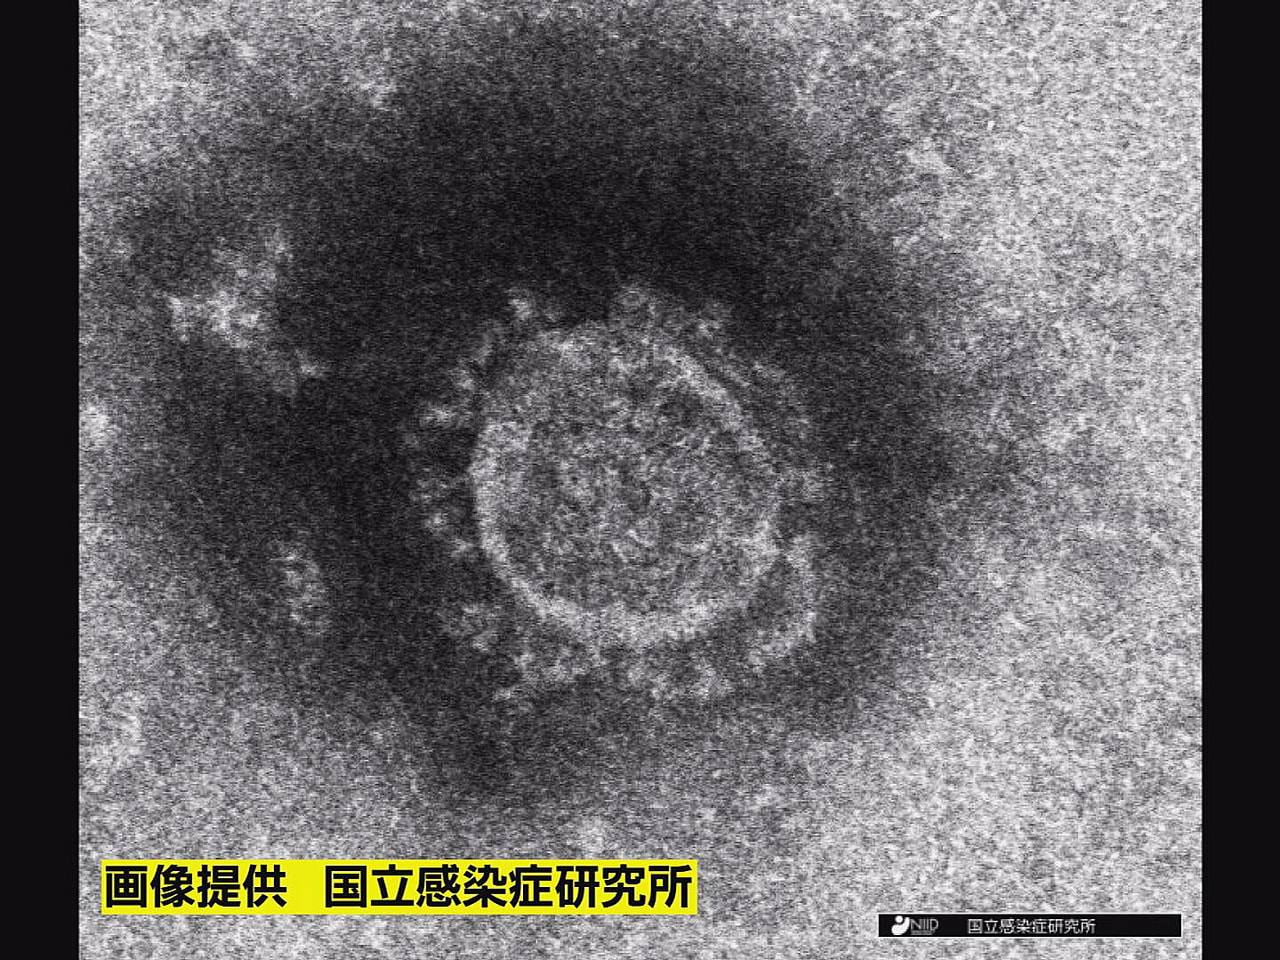 岐阜県は、１０日、新型コロナウイルスの感染が新たに２人確認されたと発表しました。...